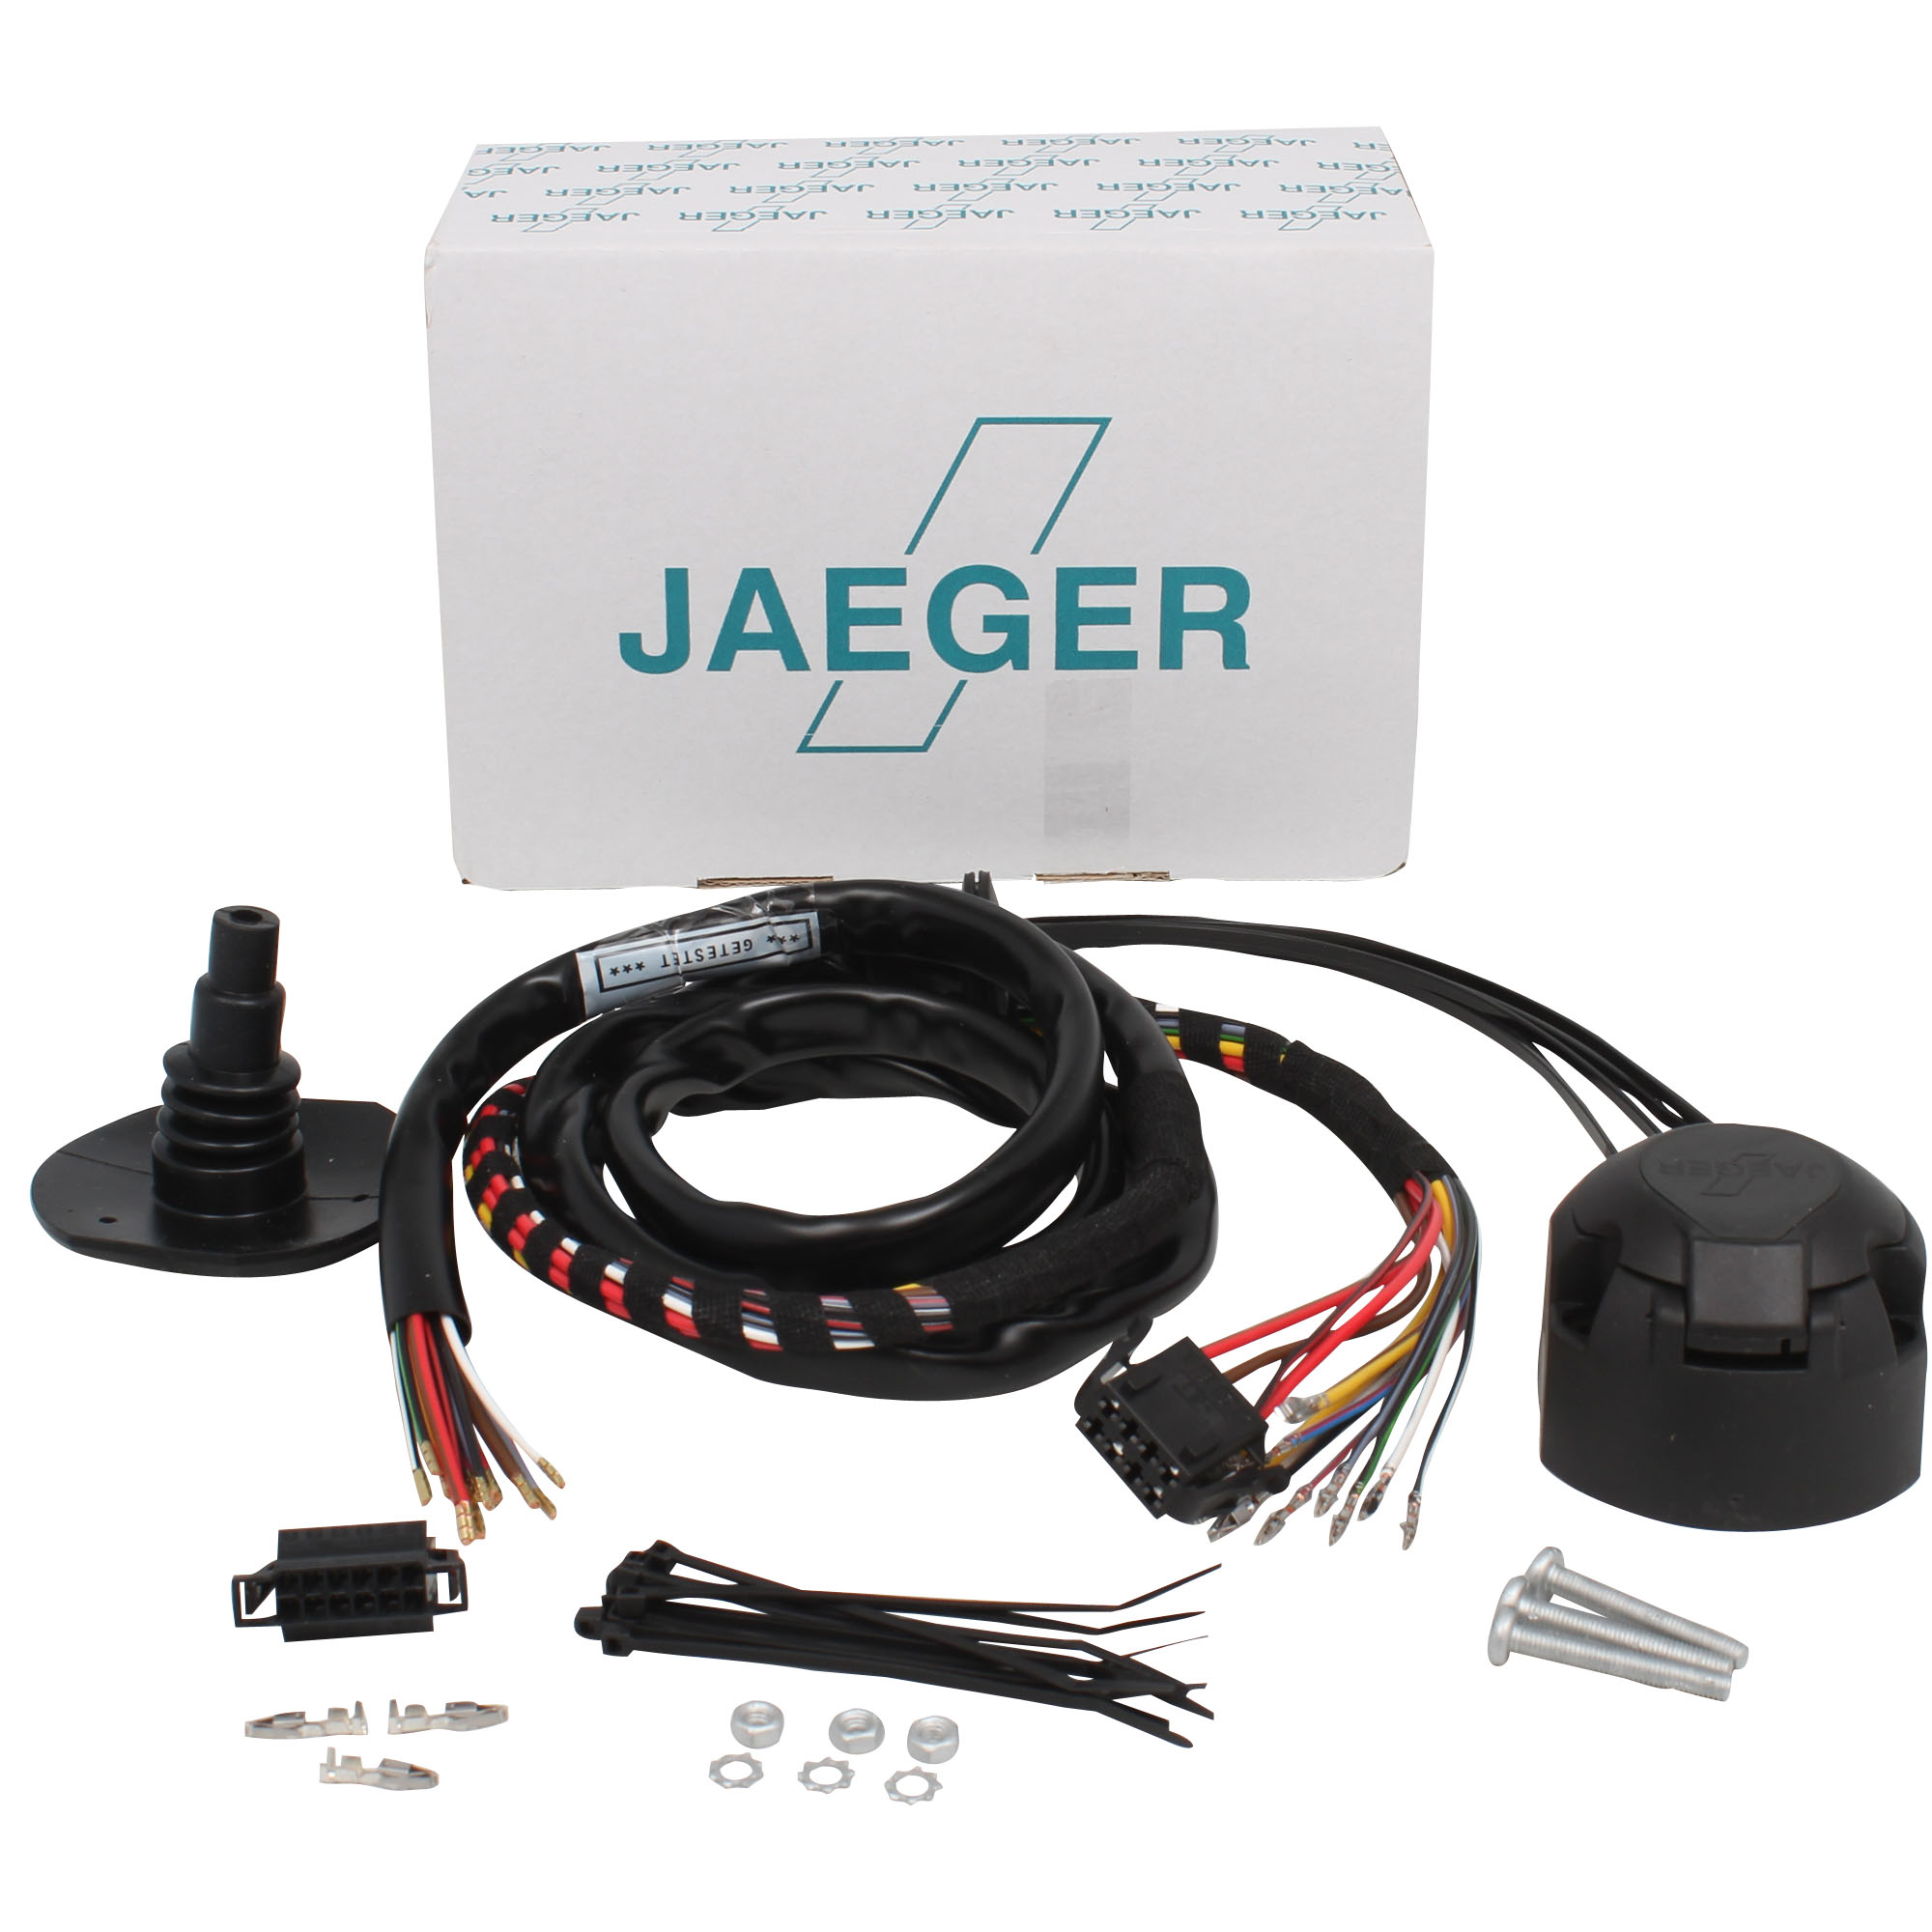 Specifieke kabelset Jaeger inclusief module